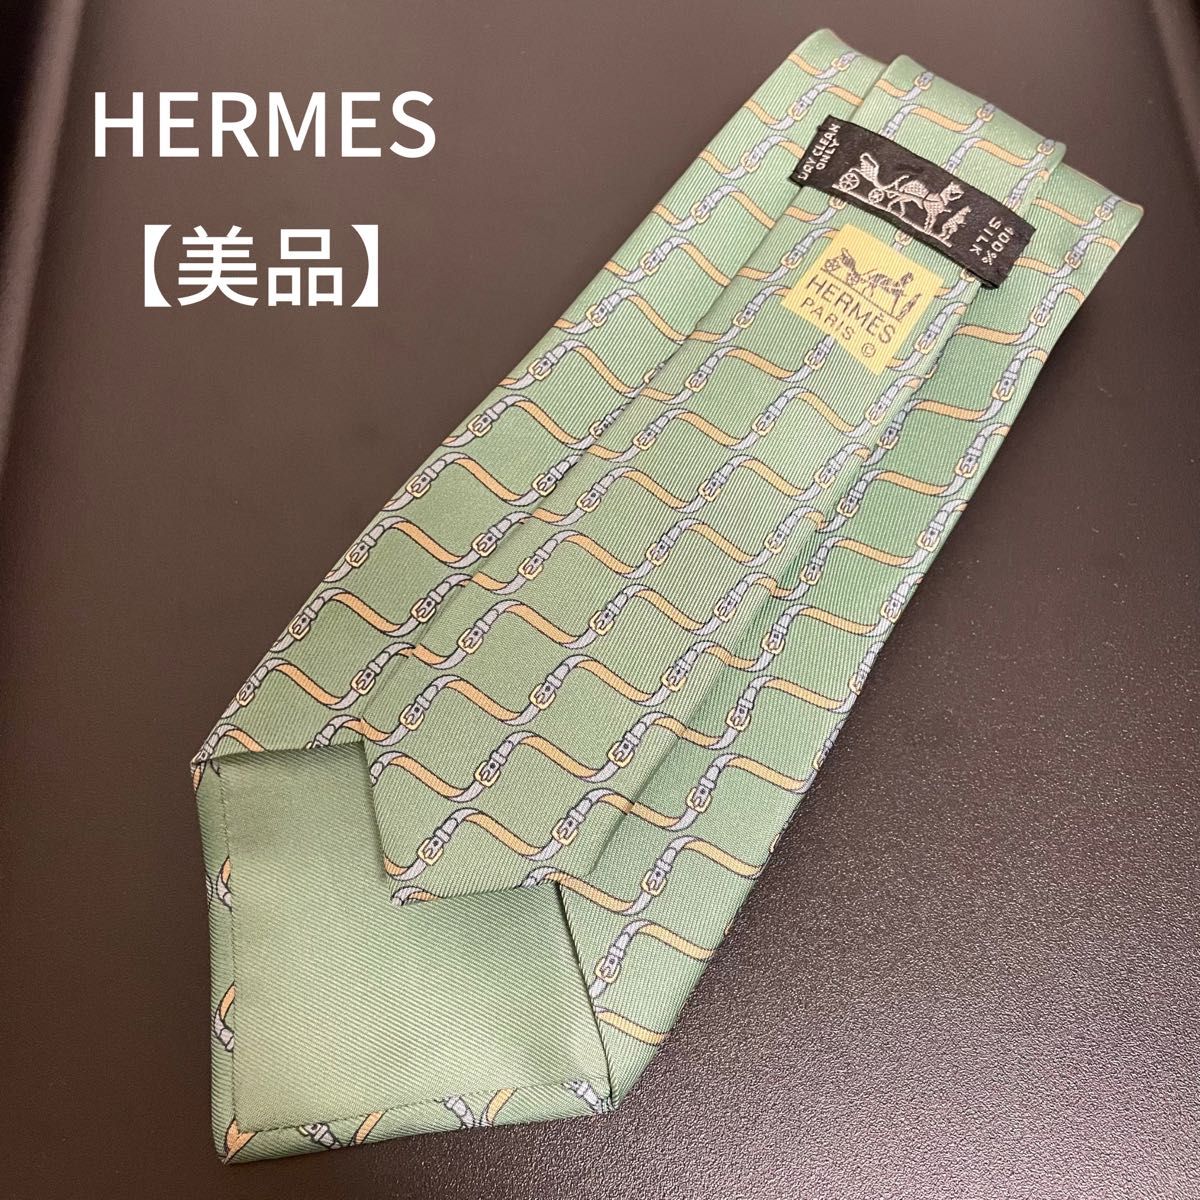 ブラウン×ピンク 新品 エルメス 花柄系 藤色 ネクタイ 袋付き Hermes 正規品 本物 レア ネクタイ